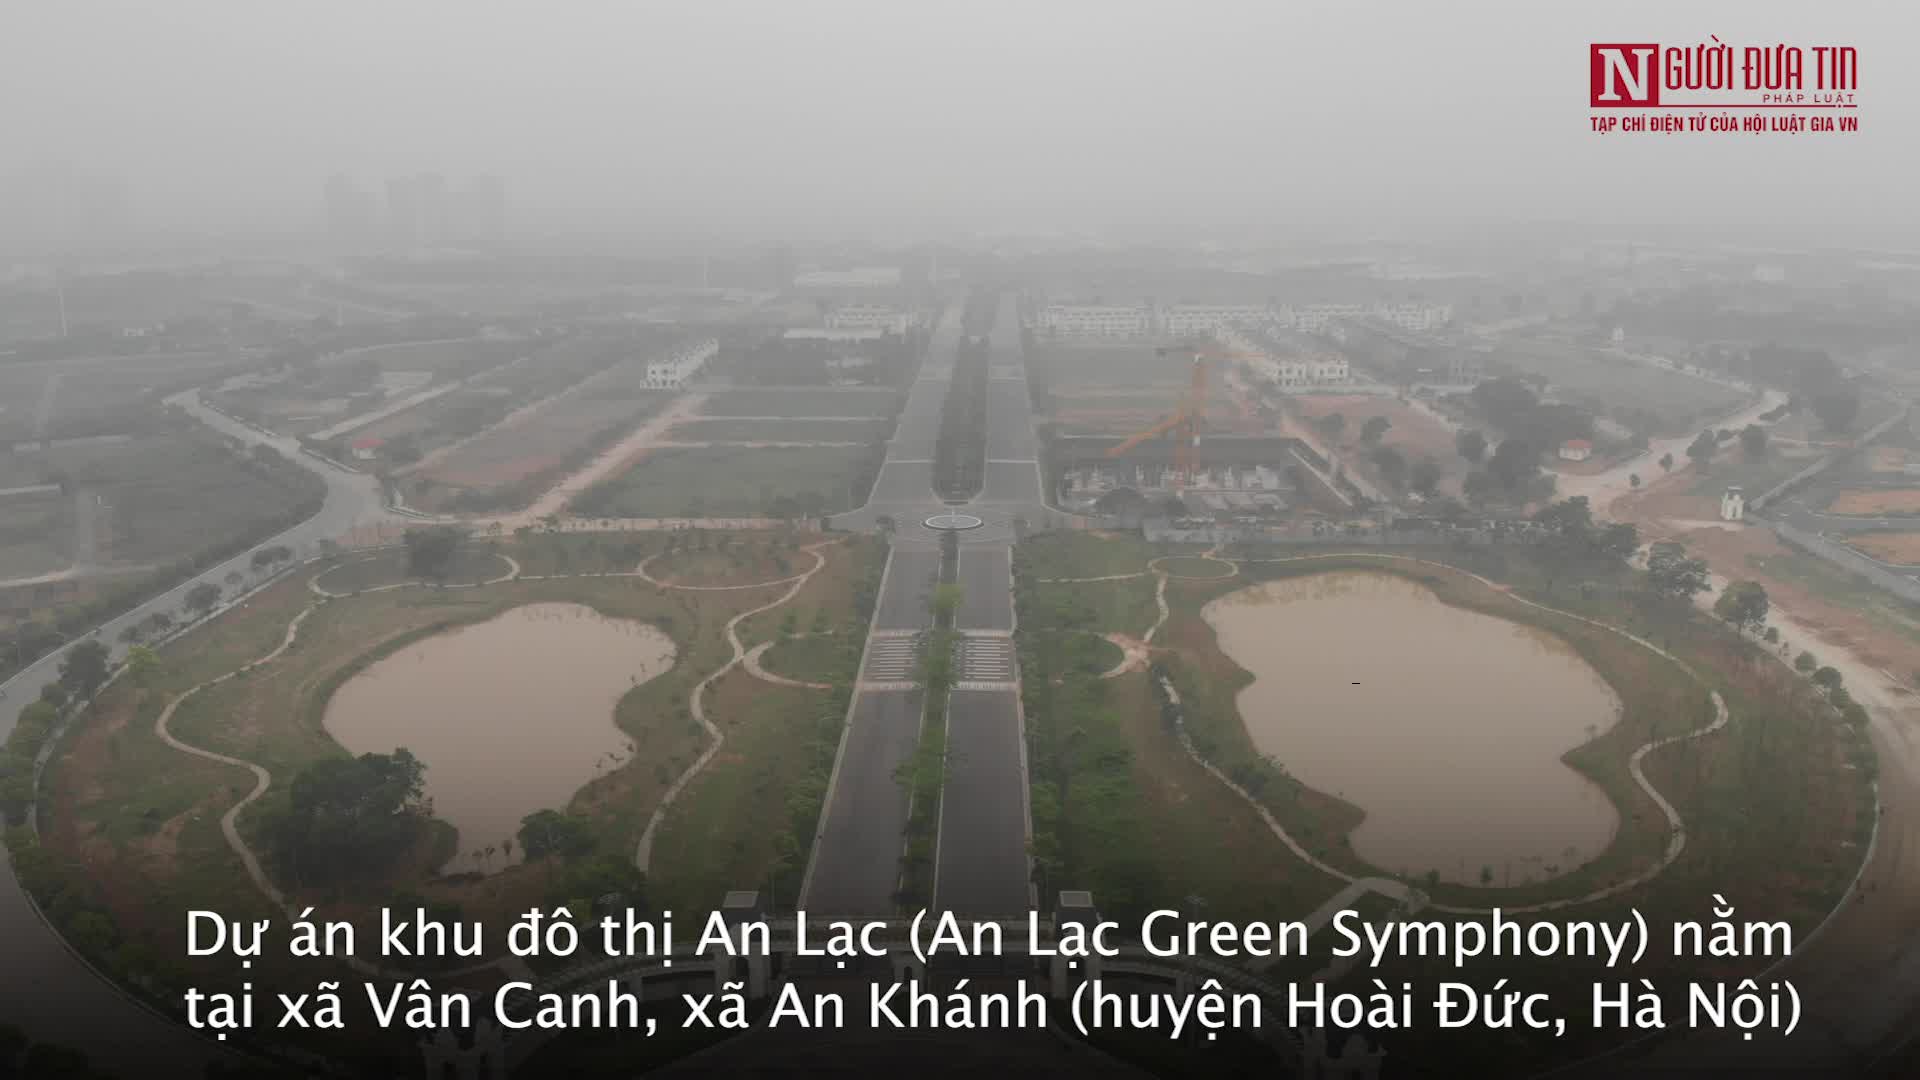 Bất động sản - Toàn cảnh dự án An Lạc Green Symphony ở Hà Nội bị “sờ gáy”